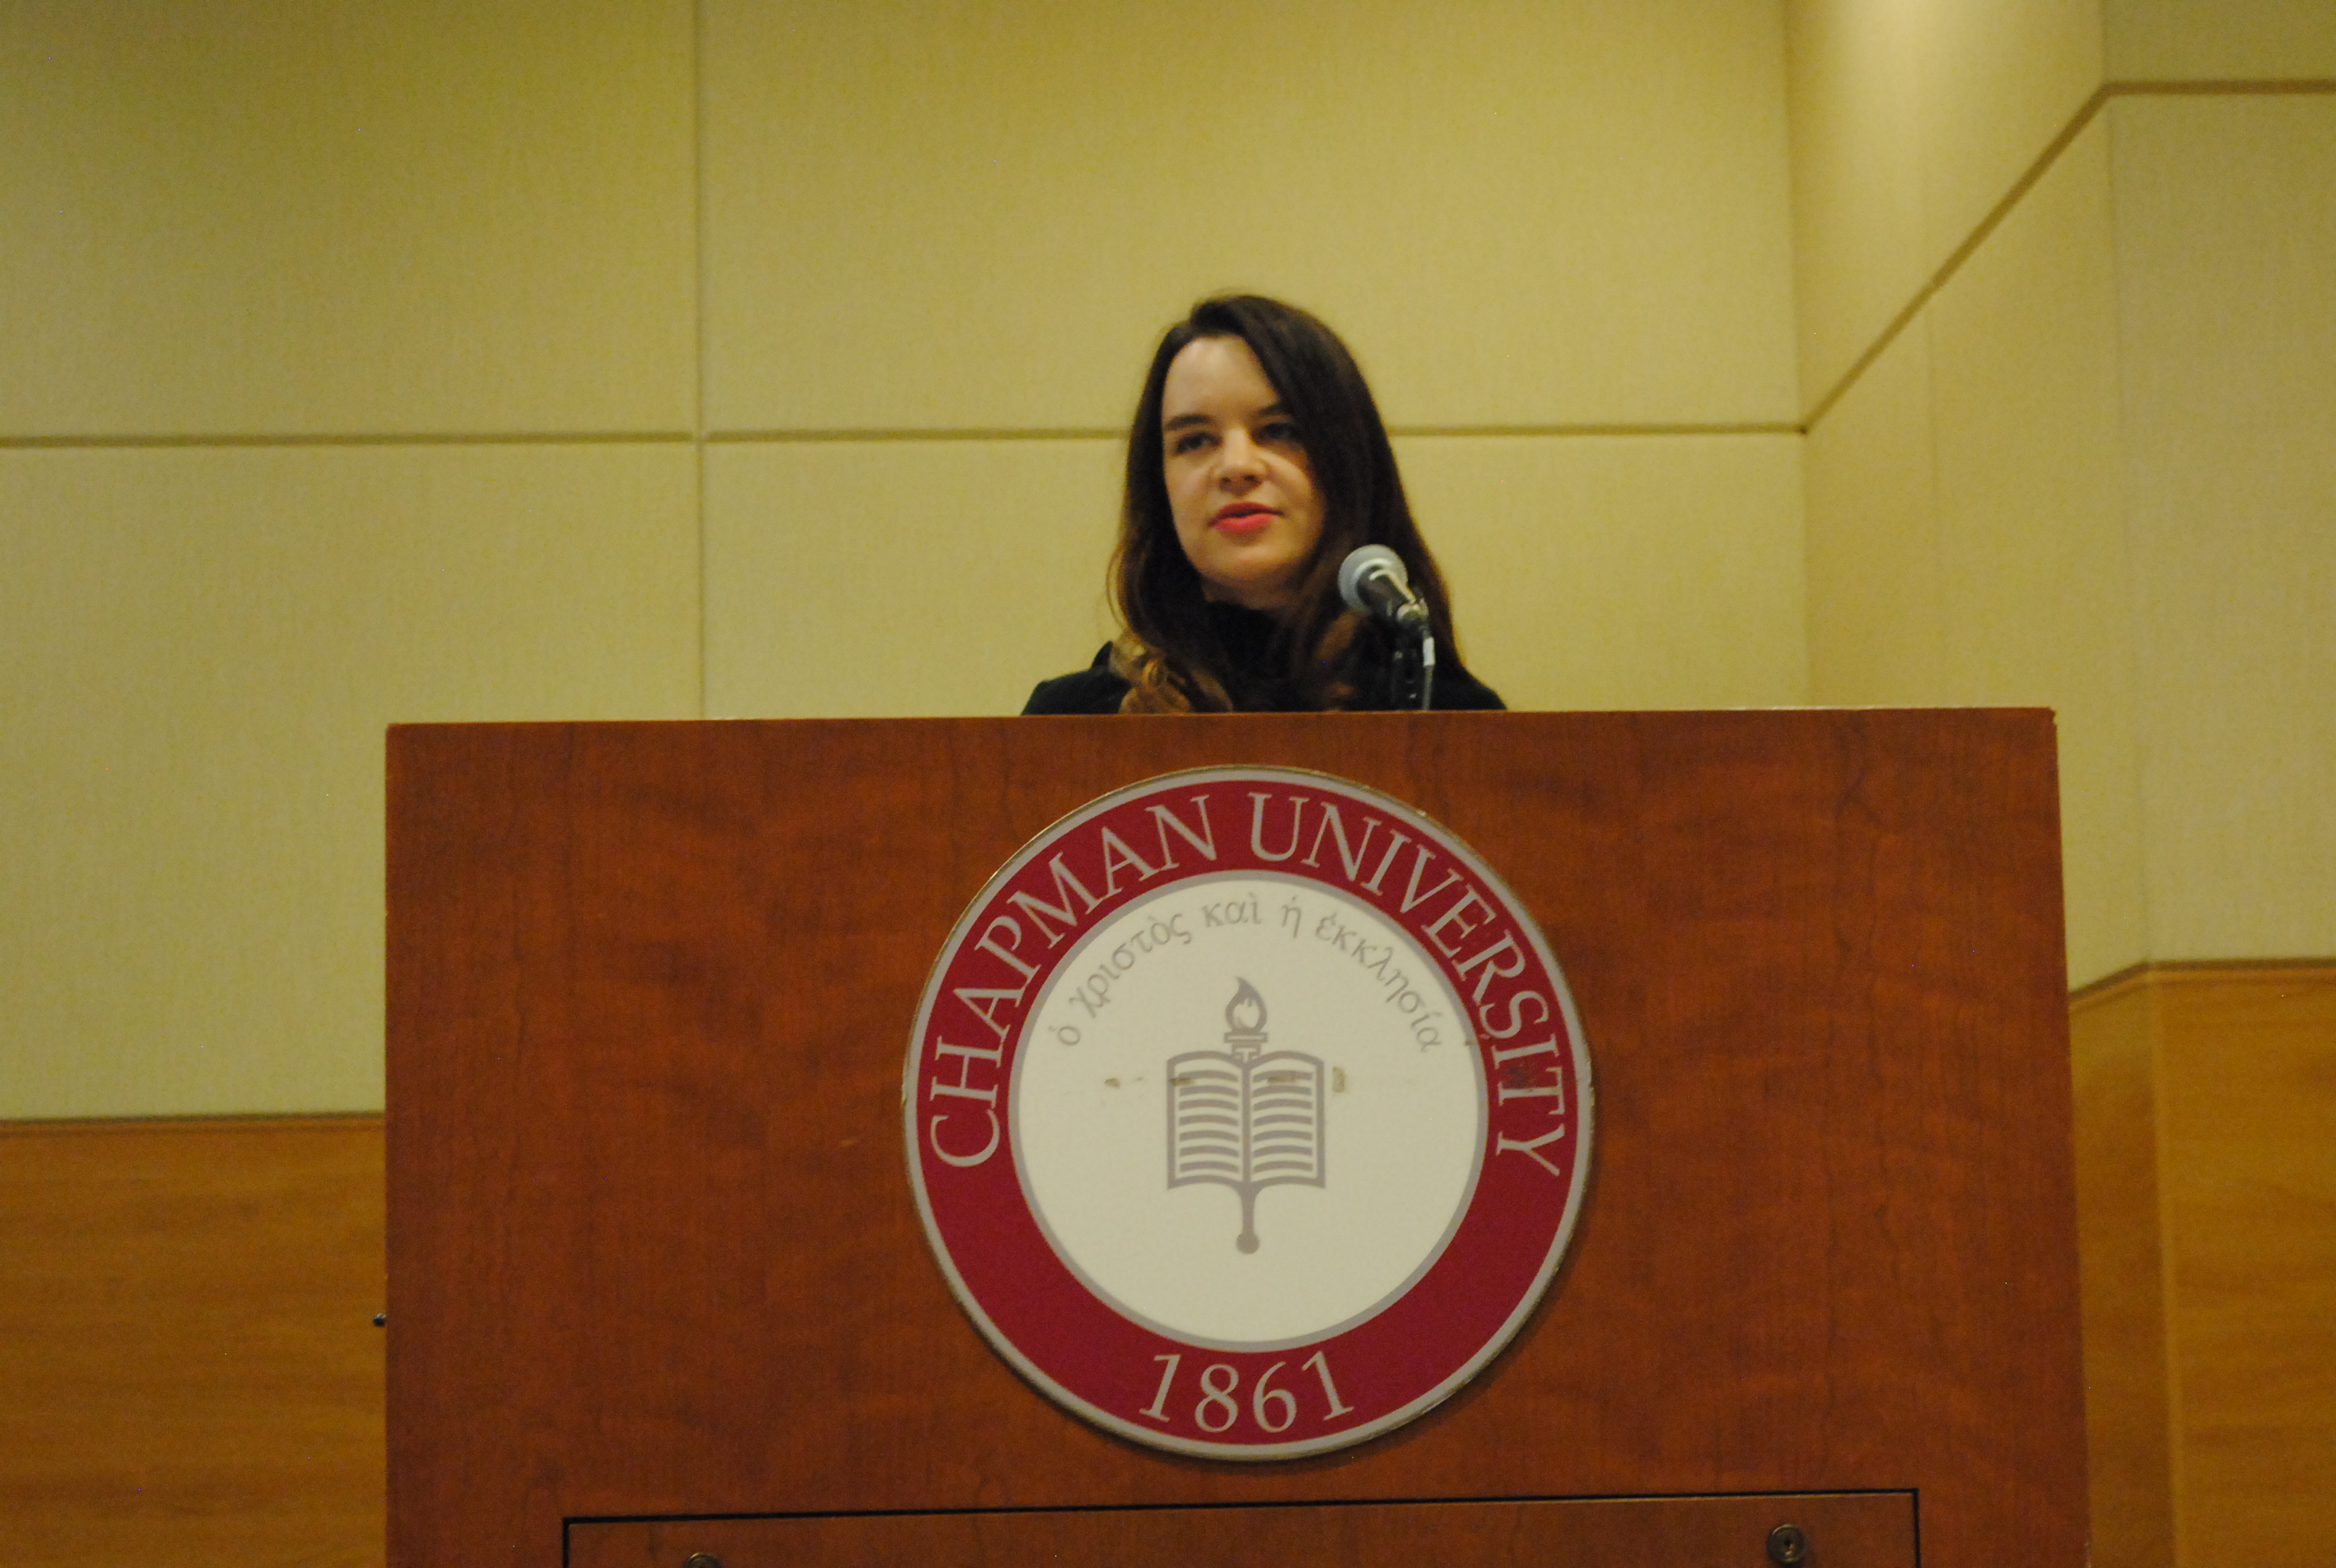 Image: Woman speaking at Chapman University podium.